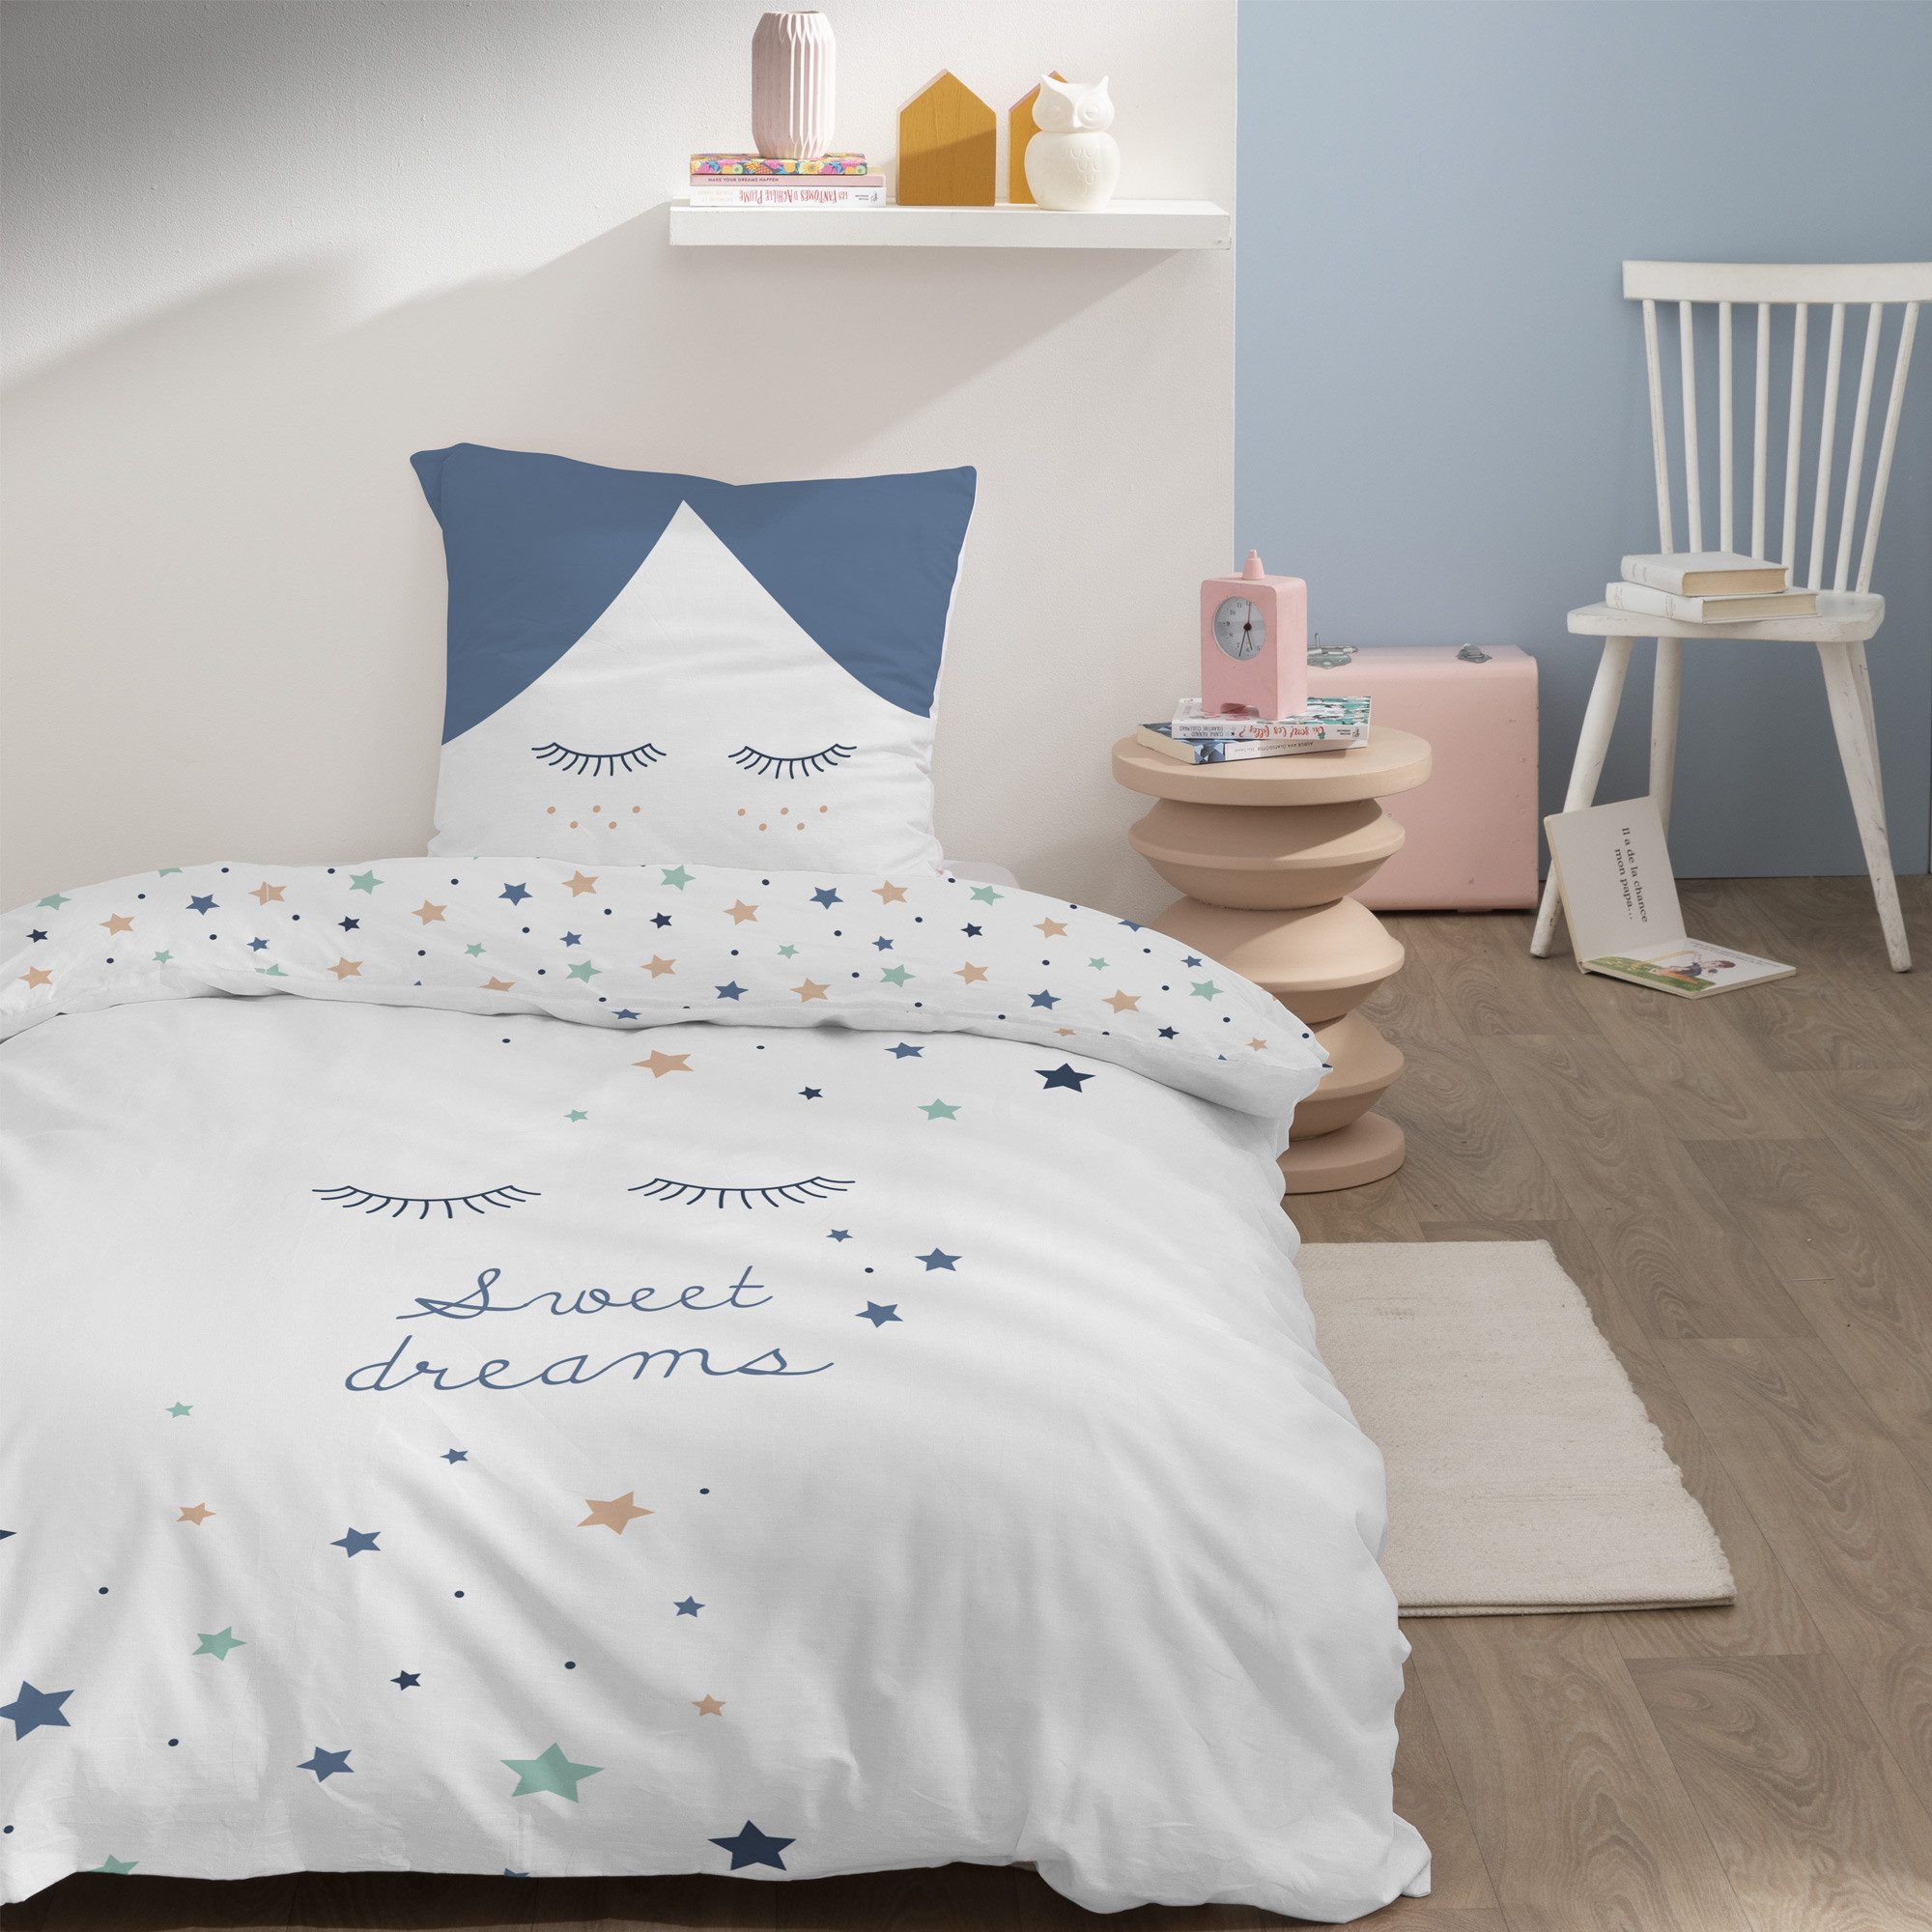 Bettwäsche Sterne Kinderbettwäsche 135x200 + 80x80 cm, 100 % Baumwolle, MTOnlinehandel, Renforcé, 2 teilig, Sterne, süße Träume Bettwäsche für Kinder und Erwachsene